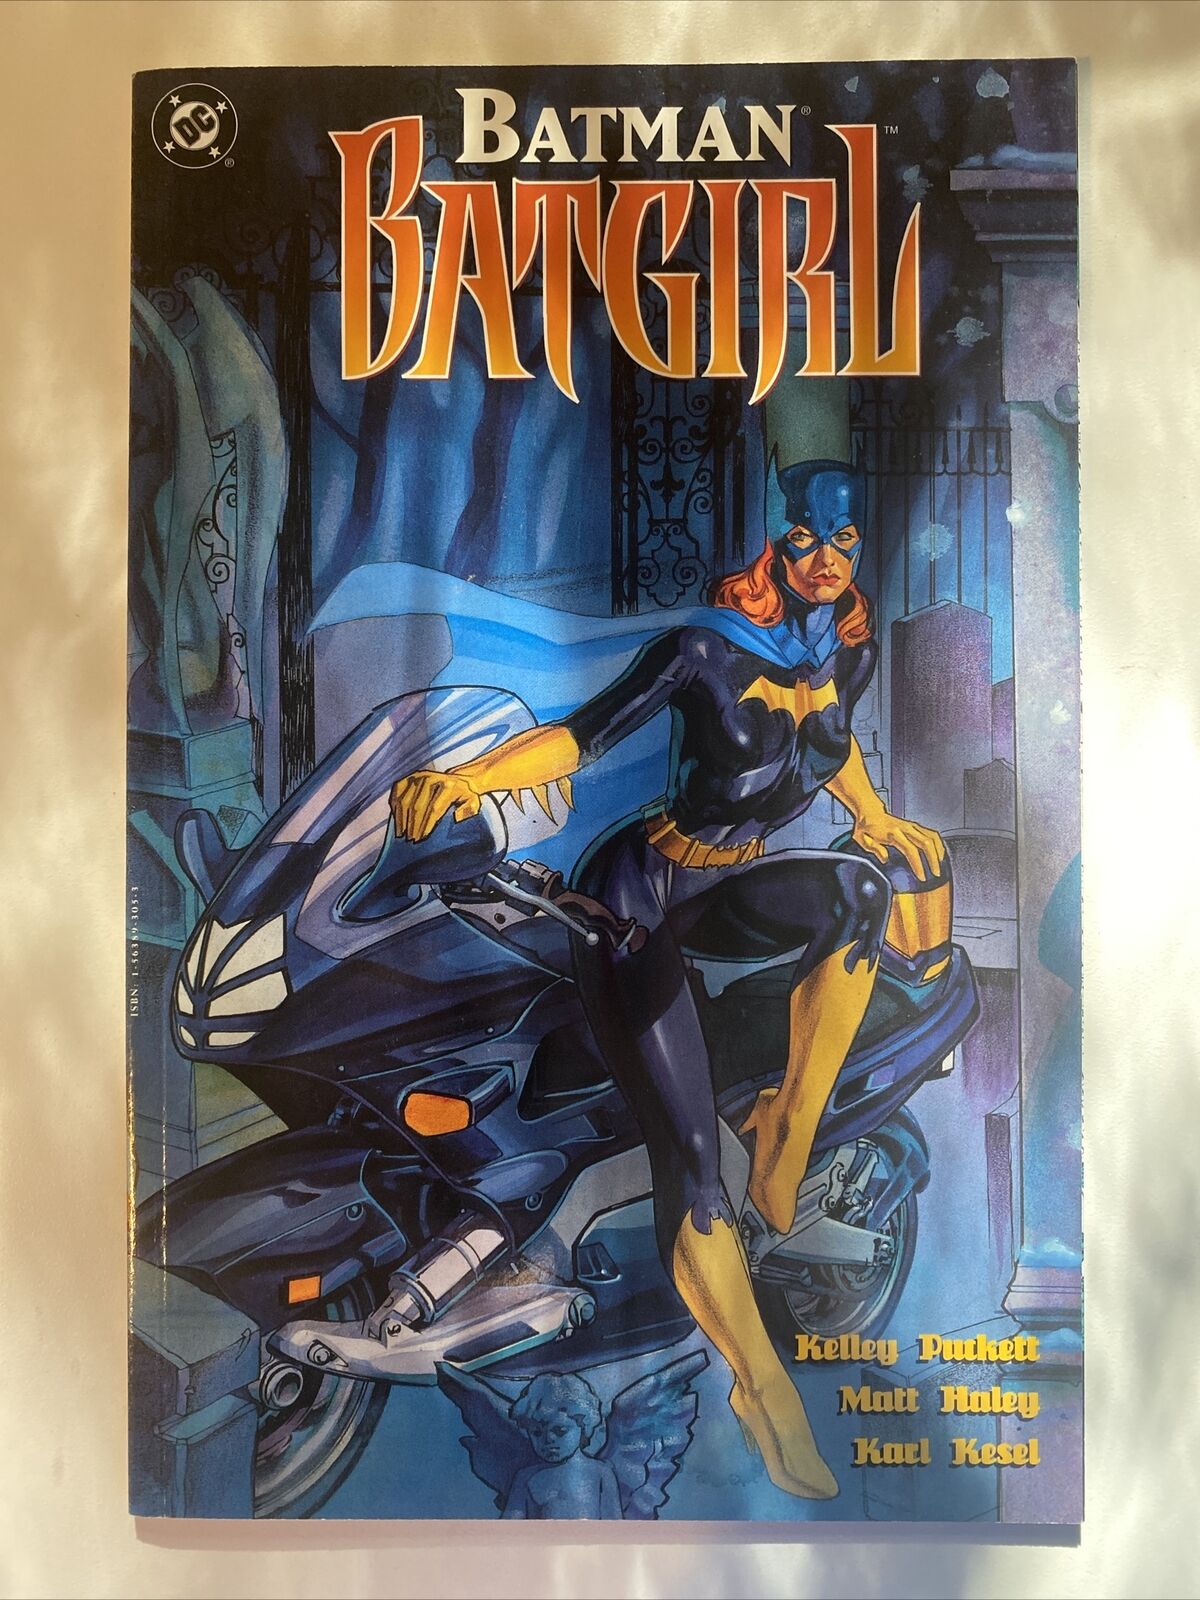 BATMAN BATGIRL #1 (DC Comics 1997) -- NM-